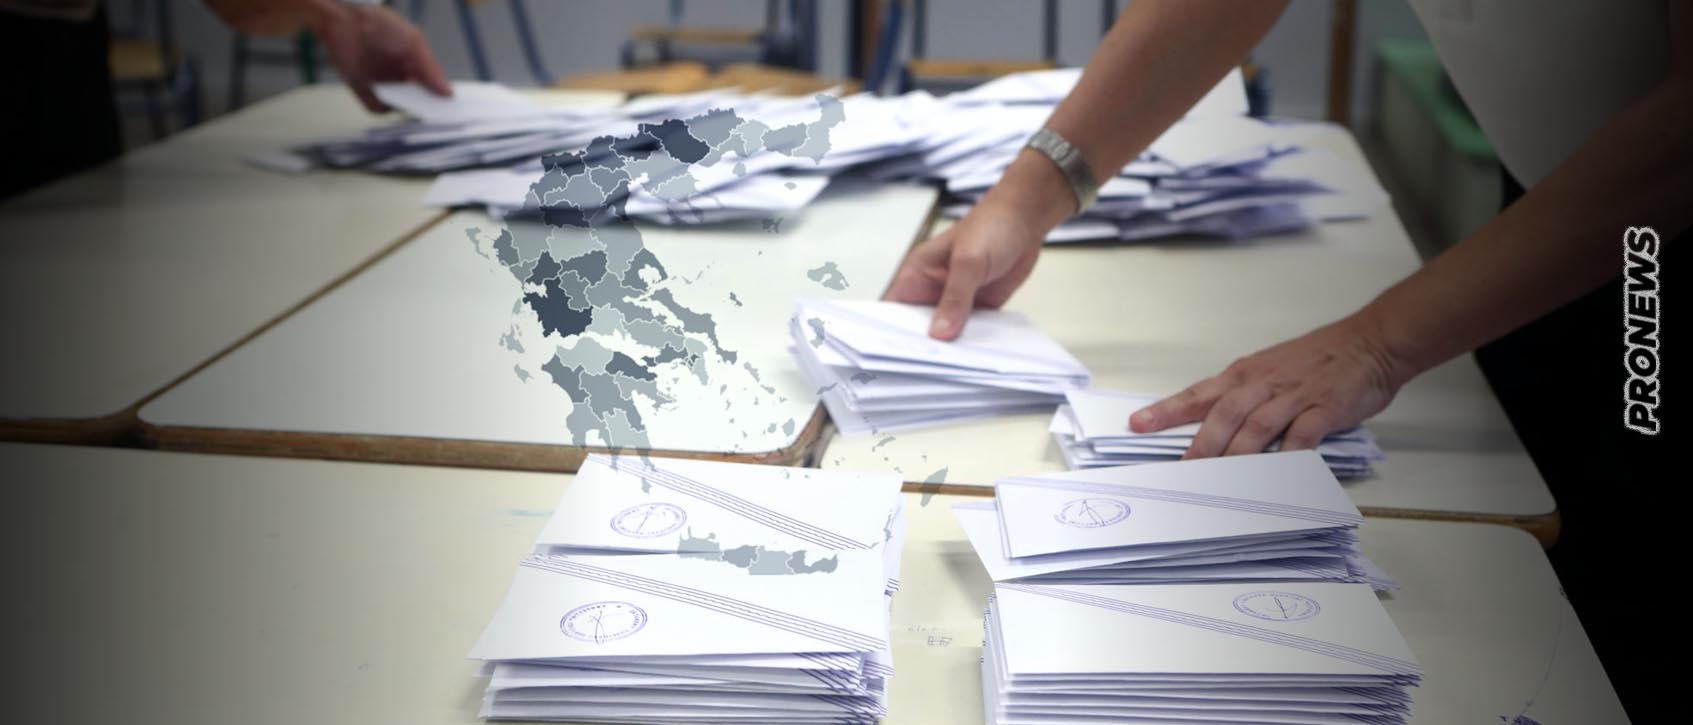 Εκλογές: Η ΝΔ πληρώνει όλα τα έξοδά σε όσους πάνε να ψηφίσουν τον υποψήφιό της στην Πάτρα